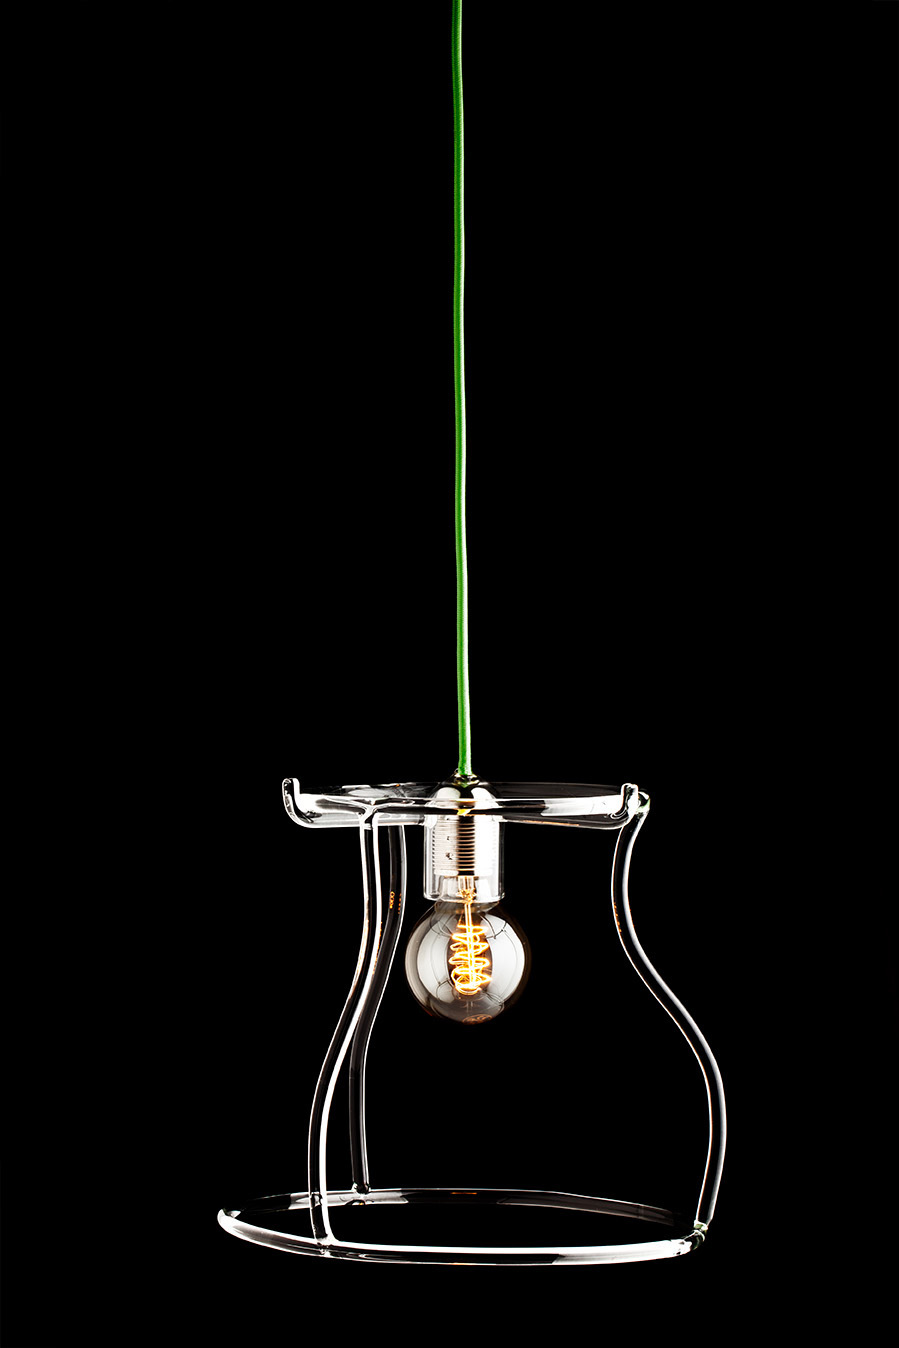 Silhouette Lamp by Giorgio Bonaguro